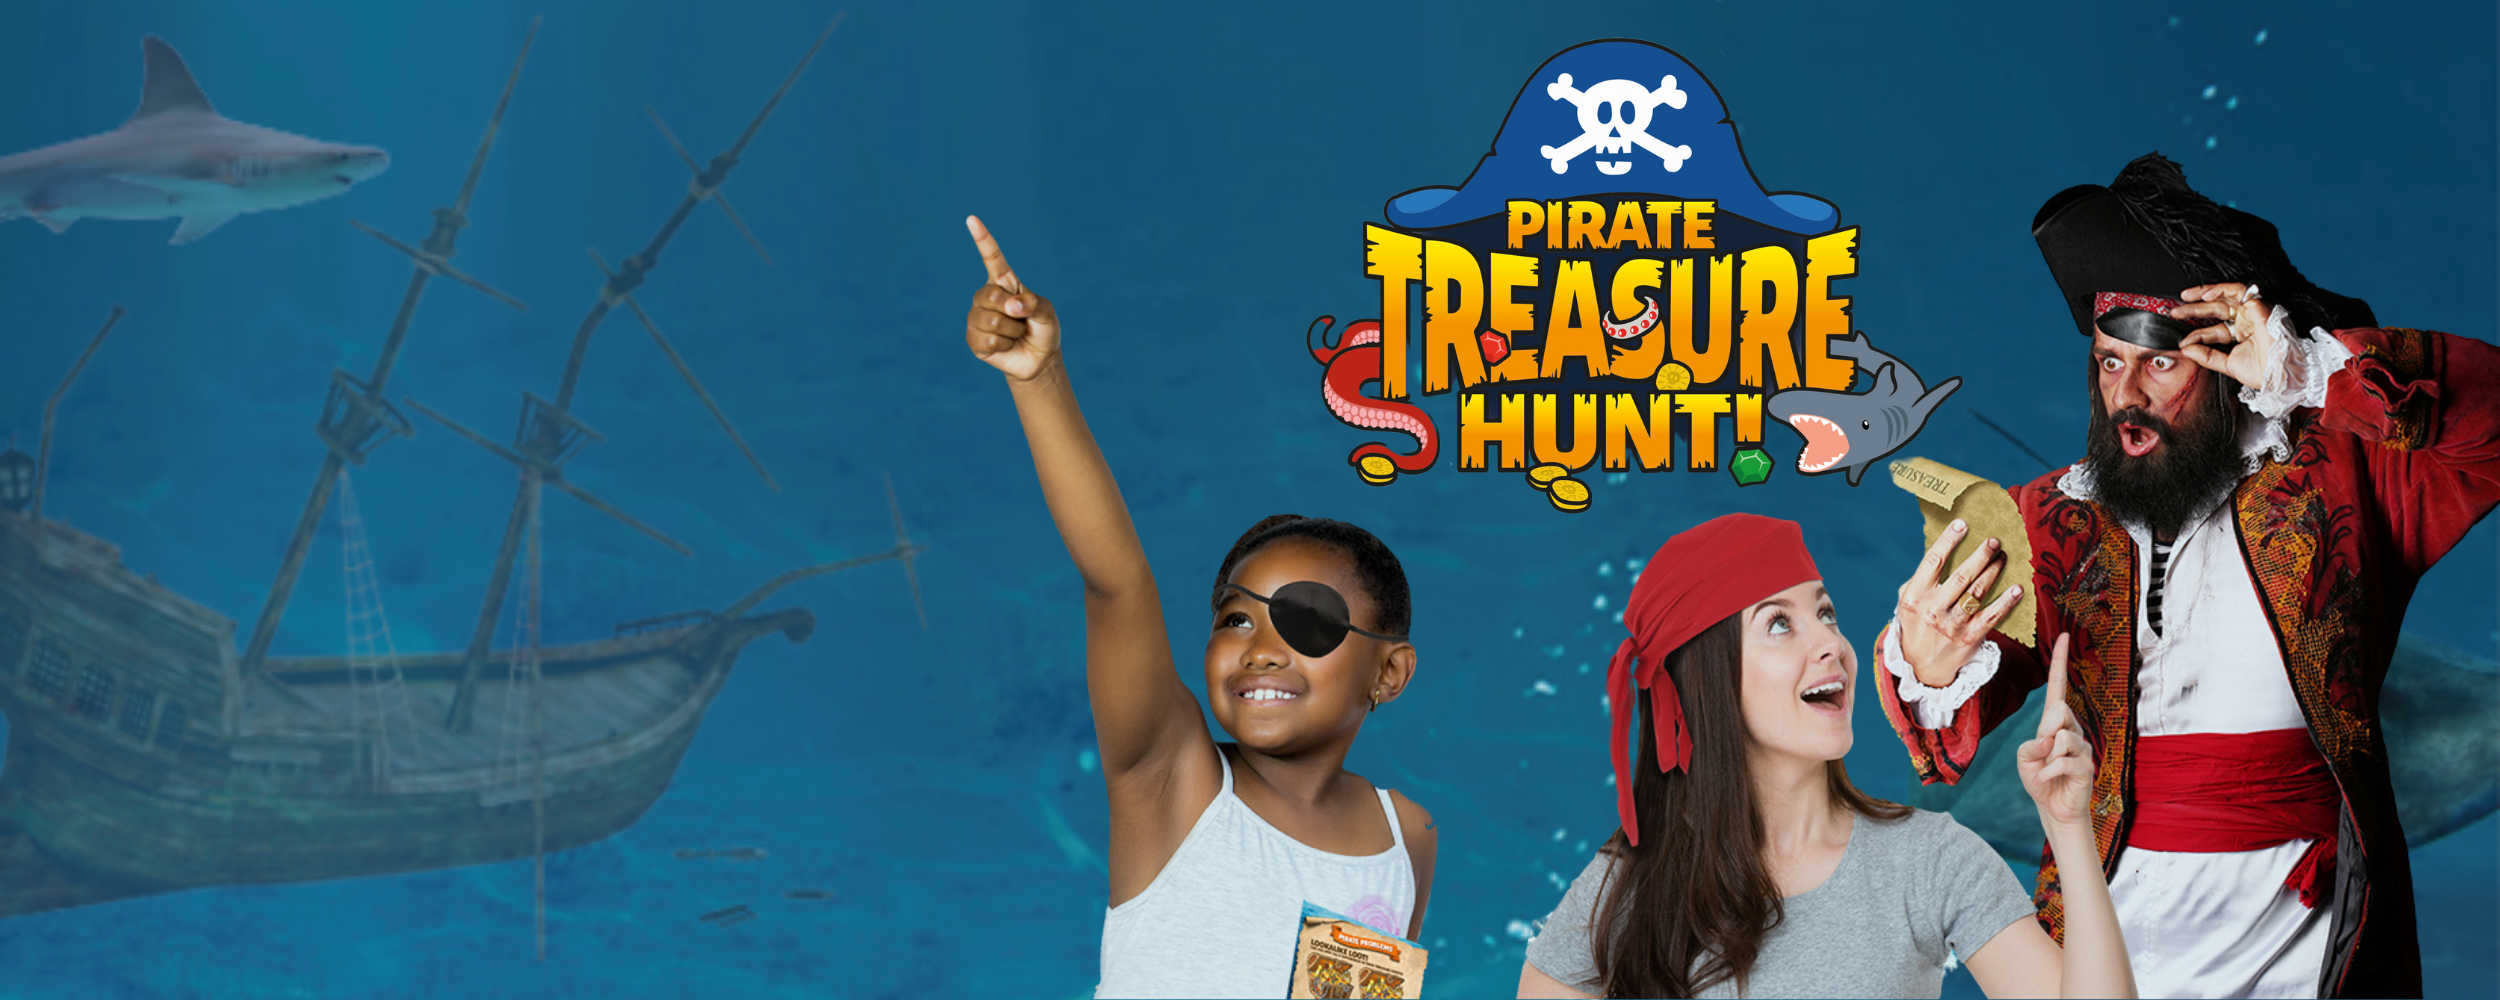 Pirate Treasure Hunt!